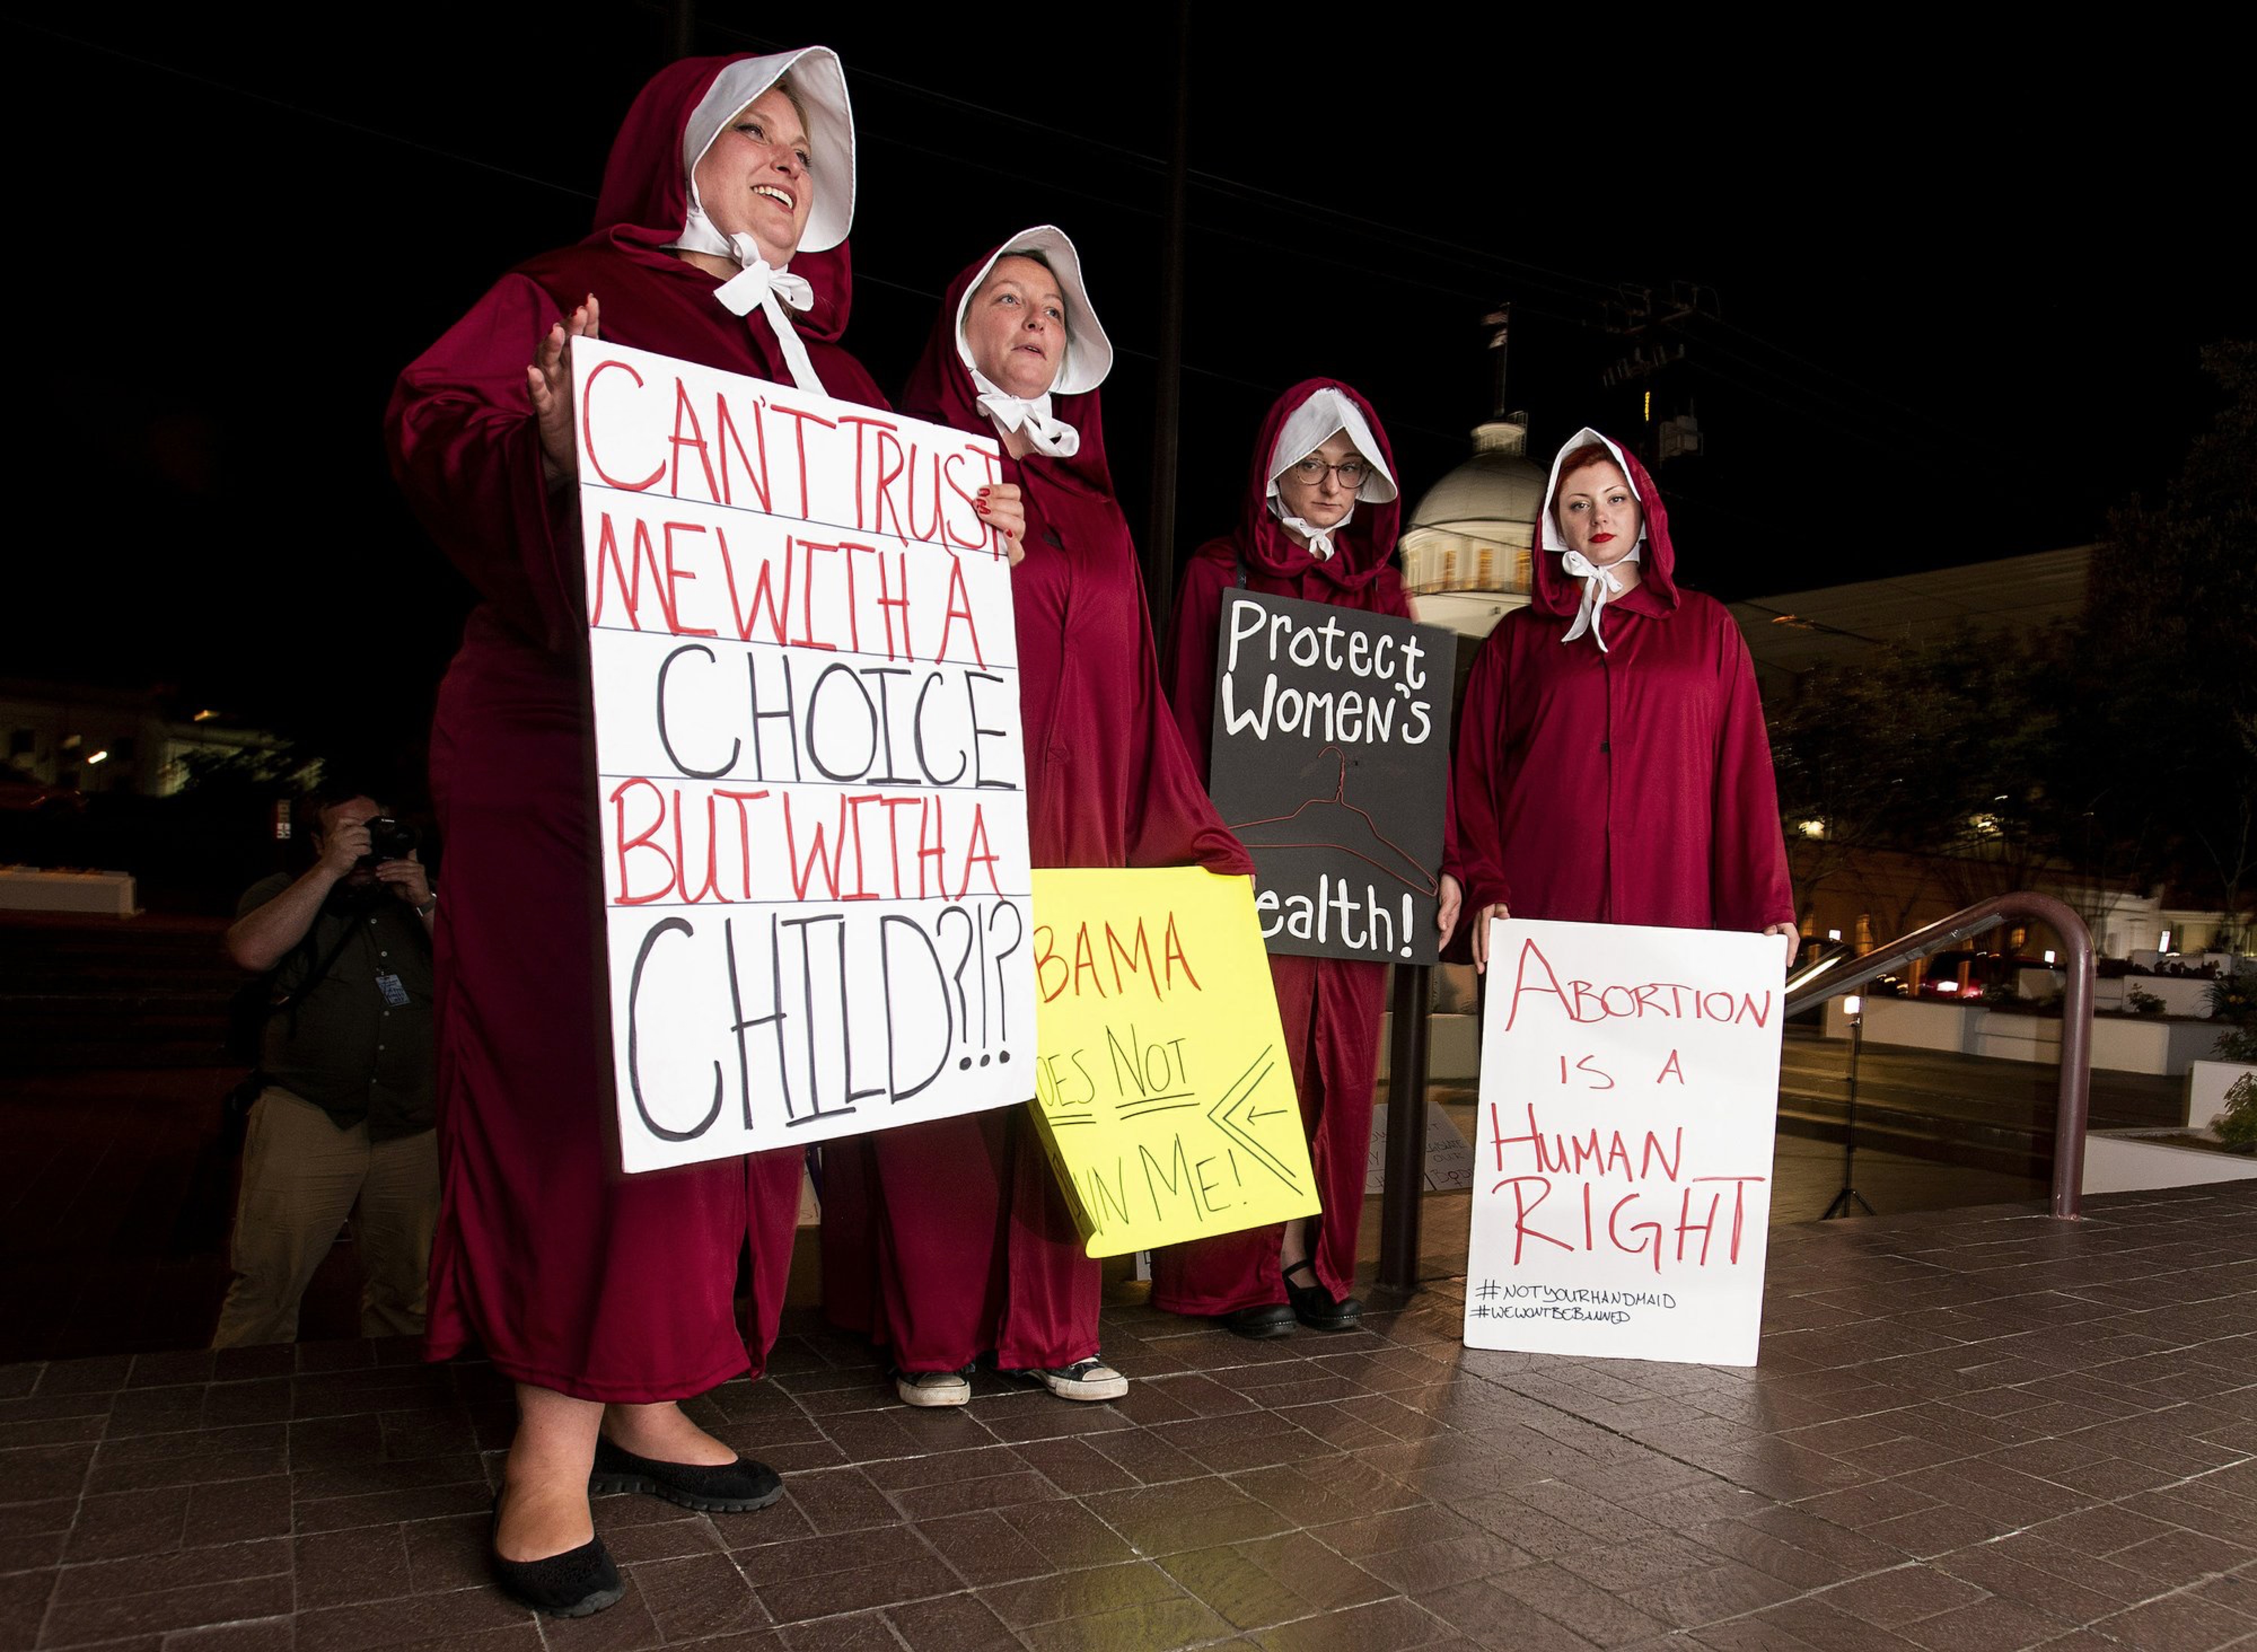 “最严苛堕胎法”惹众怒 美国多地爆发抗议活动